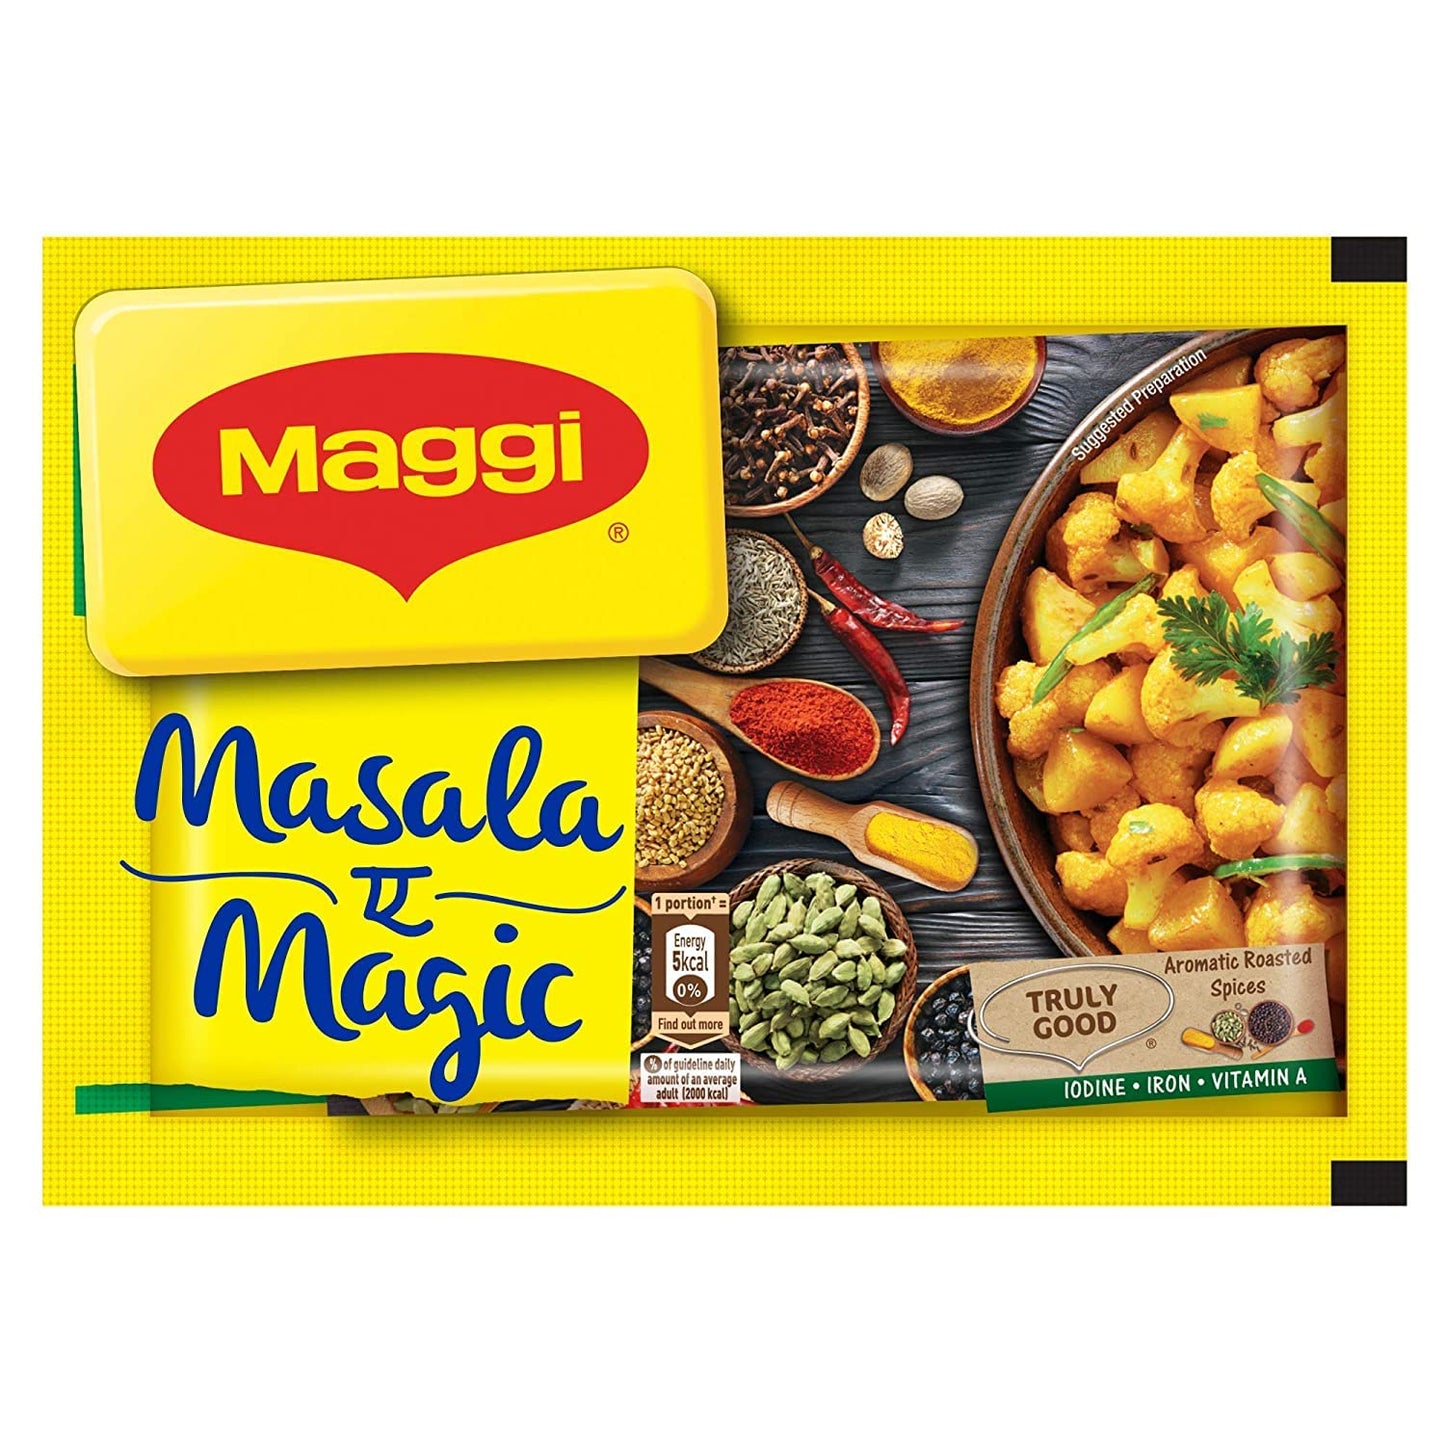 MAGGI MASALA-A-MAGIC PACK OF 5 (5n x 6gm)